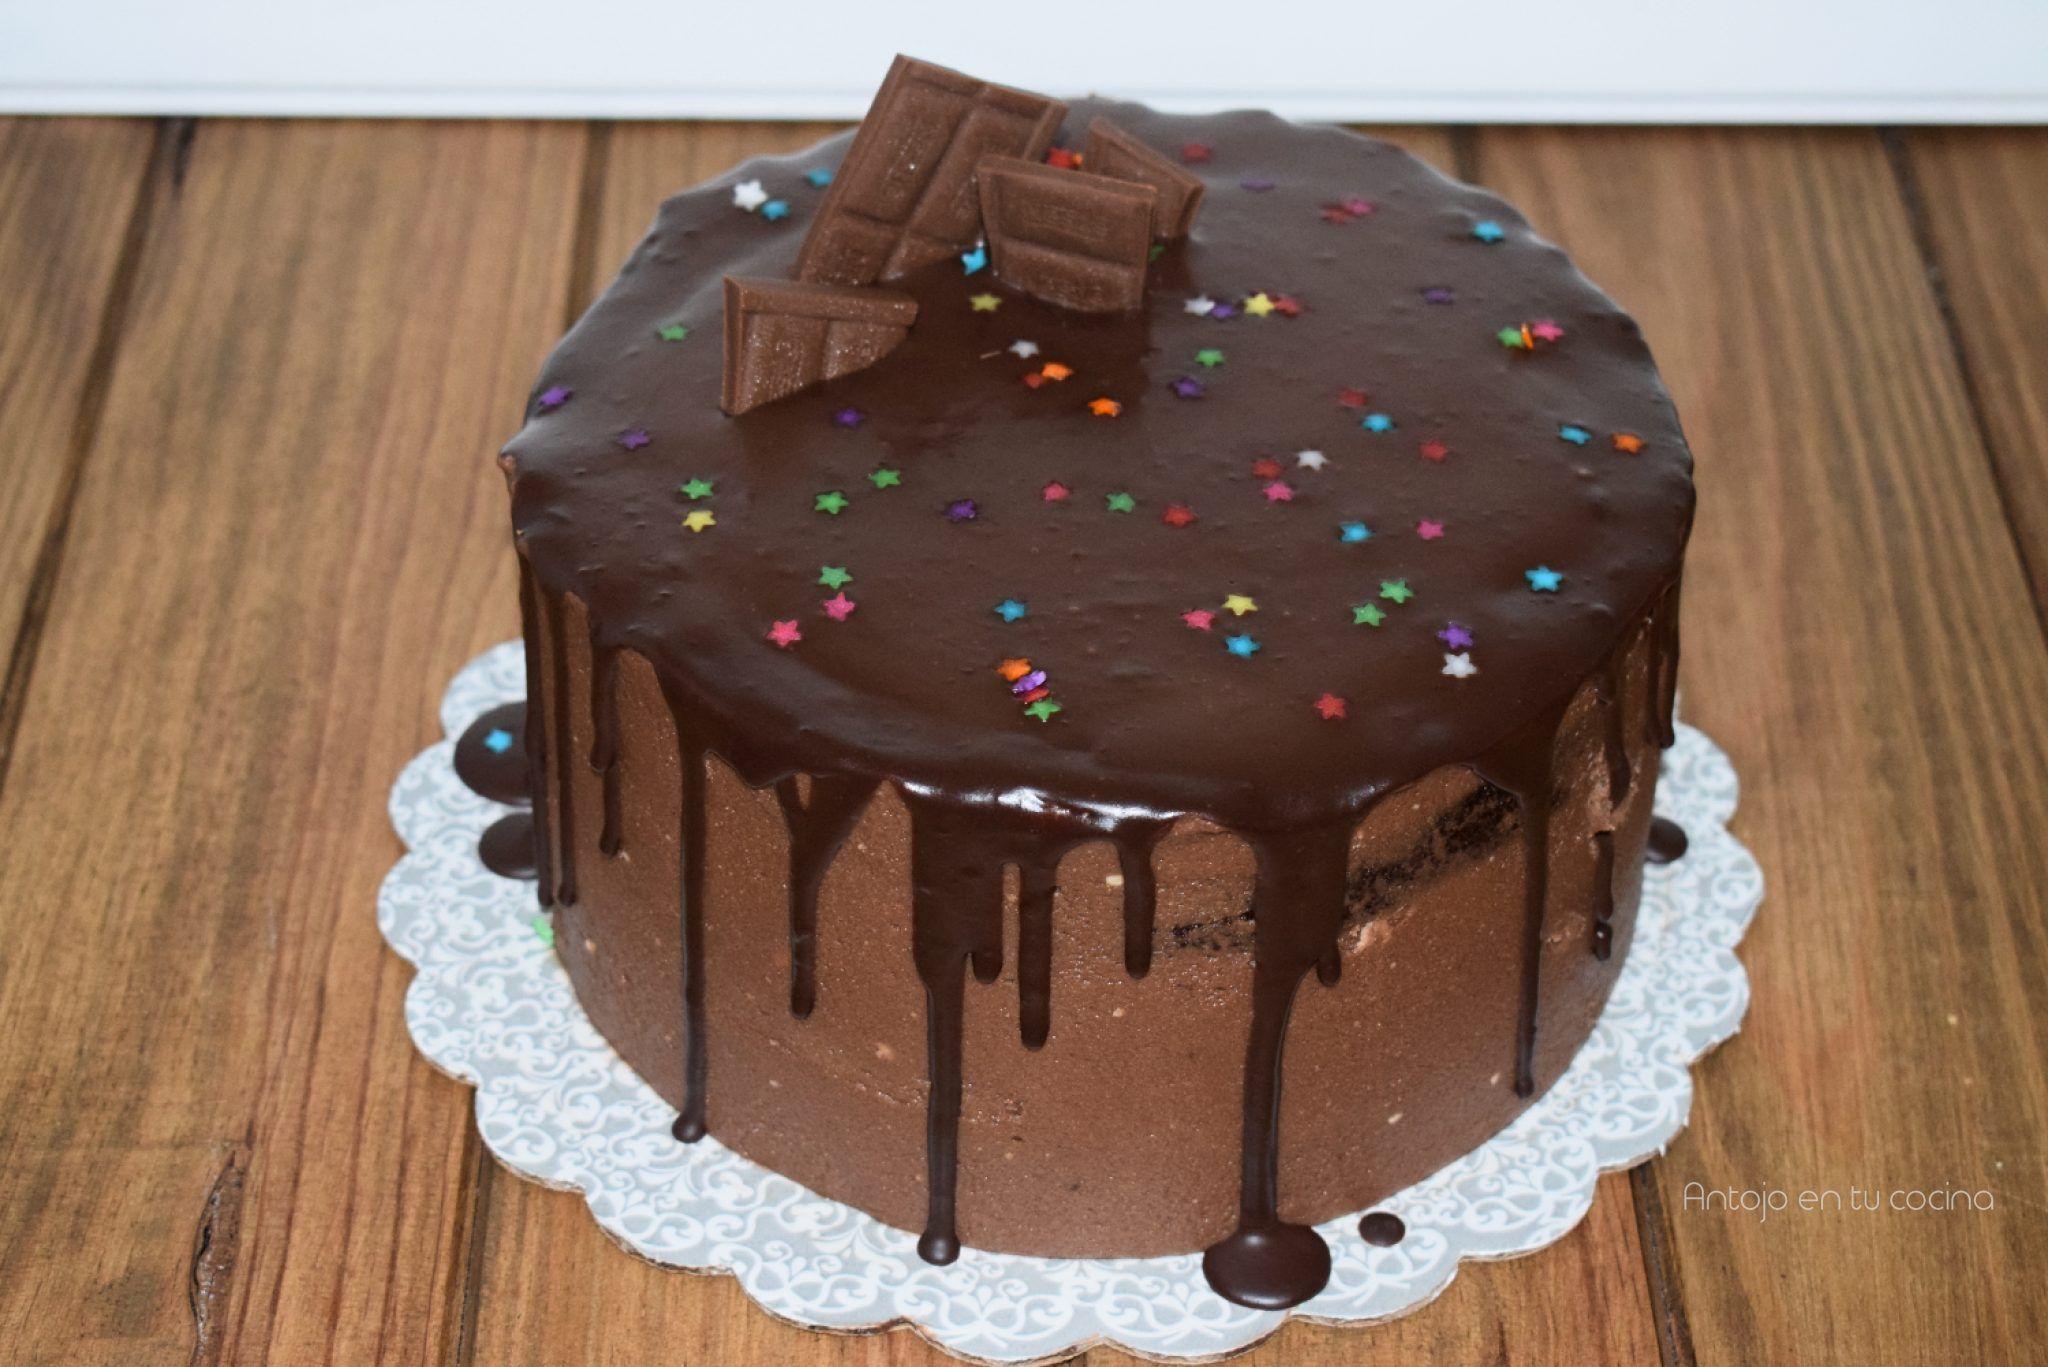 3. ¿Cuál es la mejor manera de decorar un pastel?